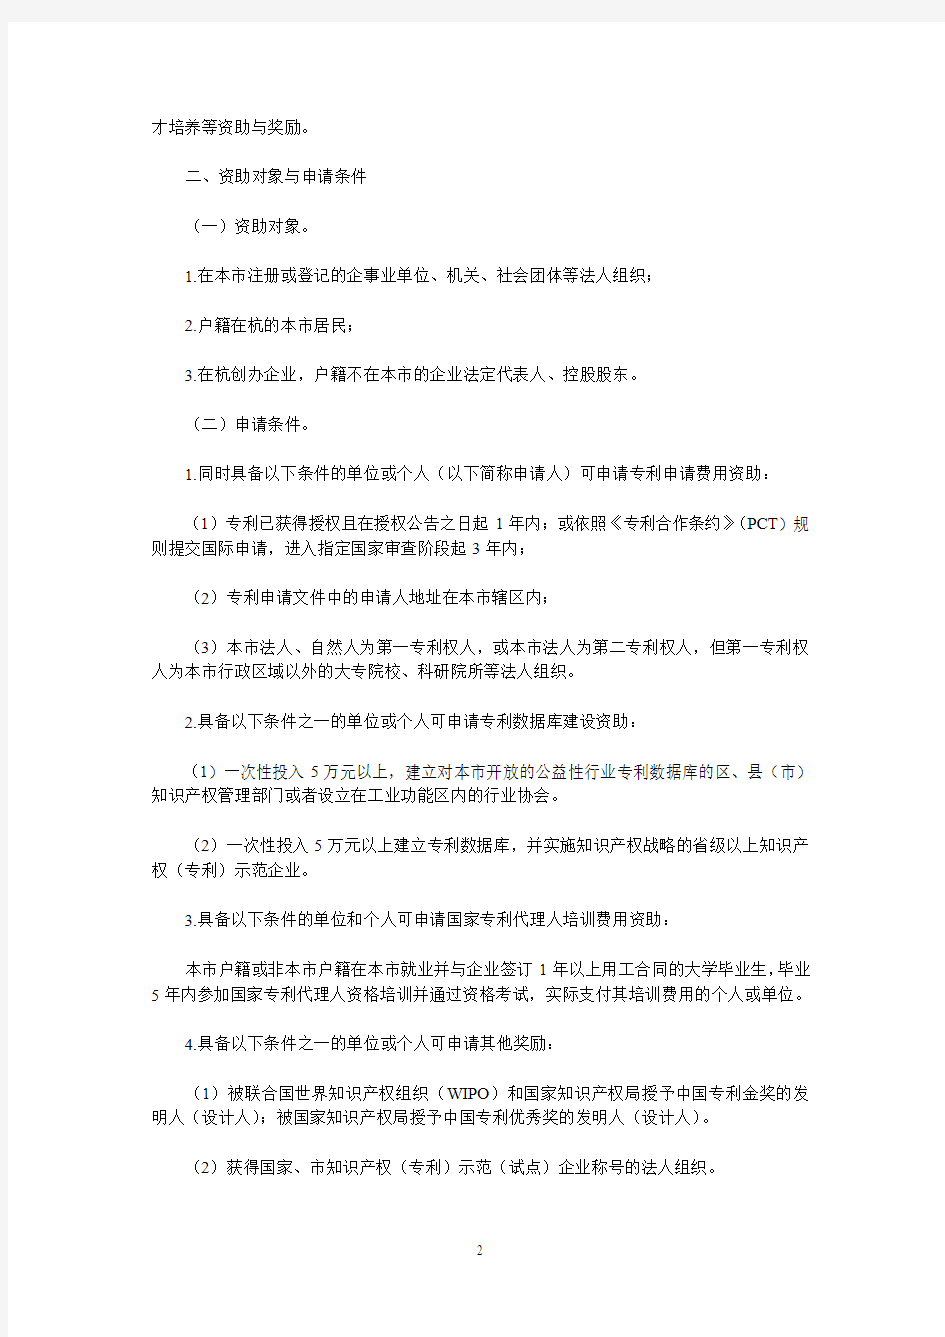 杭州市专利专项资金管理办法